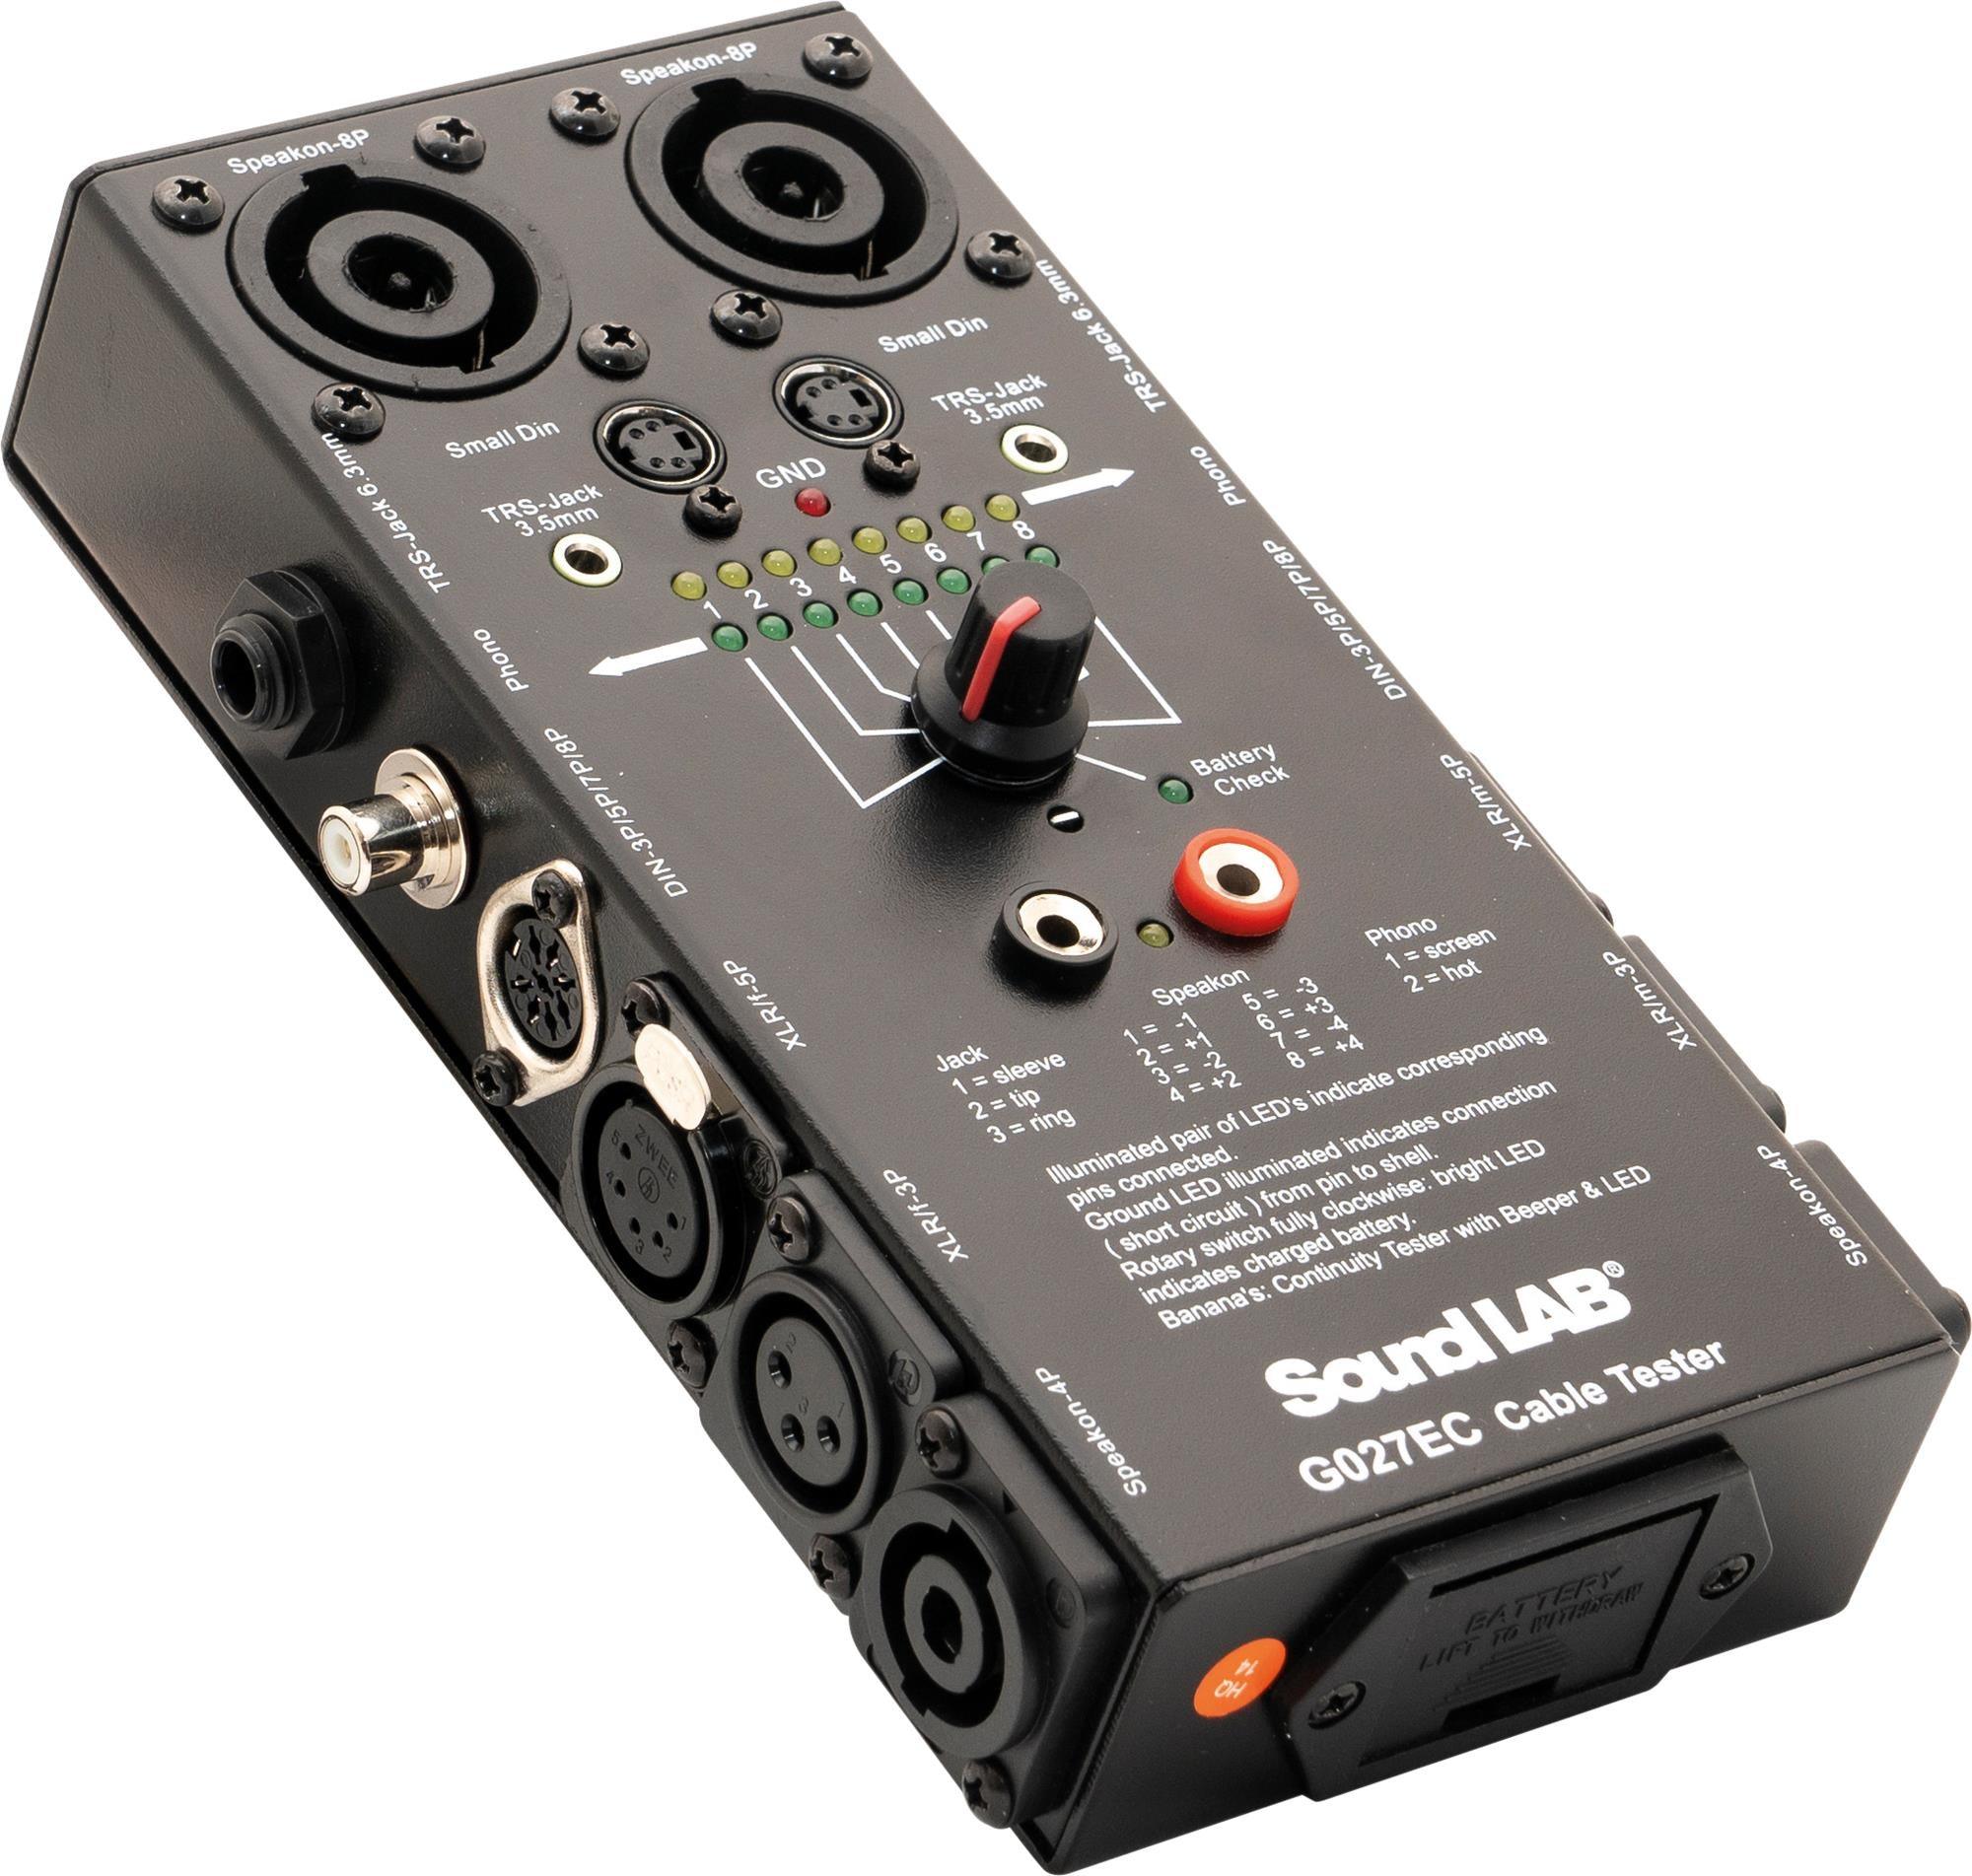 Plasticidad Telemacos Muelle del puente Soundlab Audio Cable Tester (Type 11)